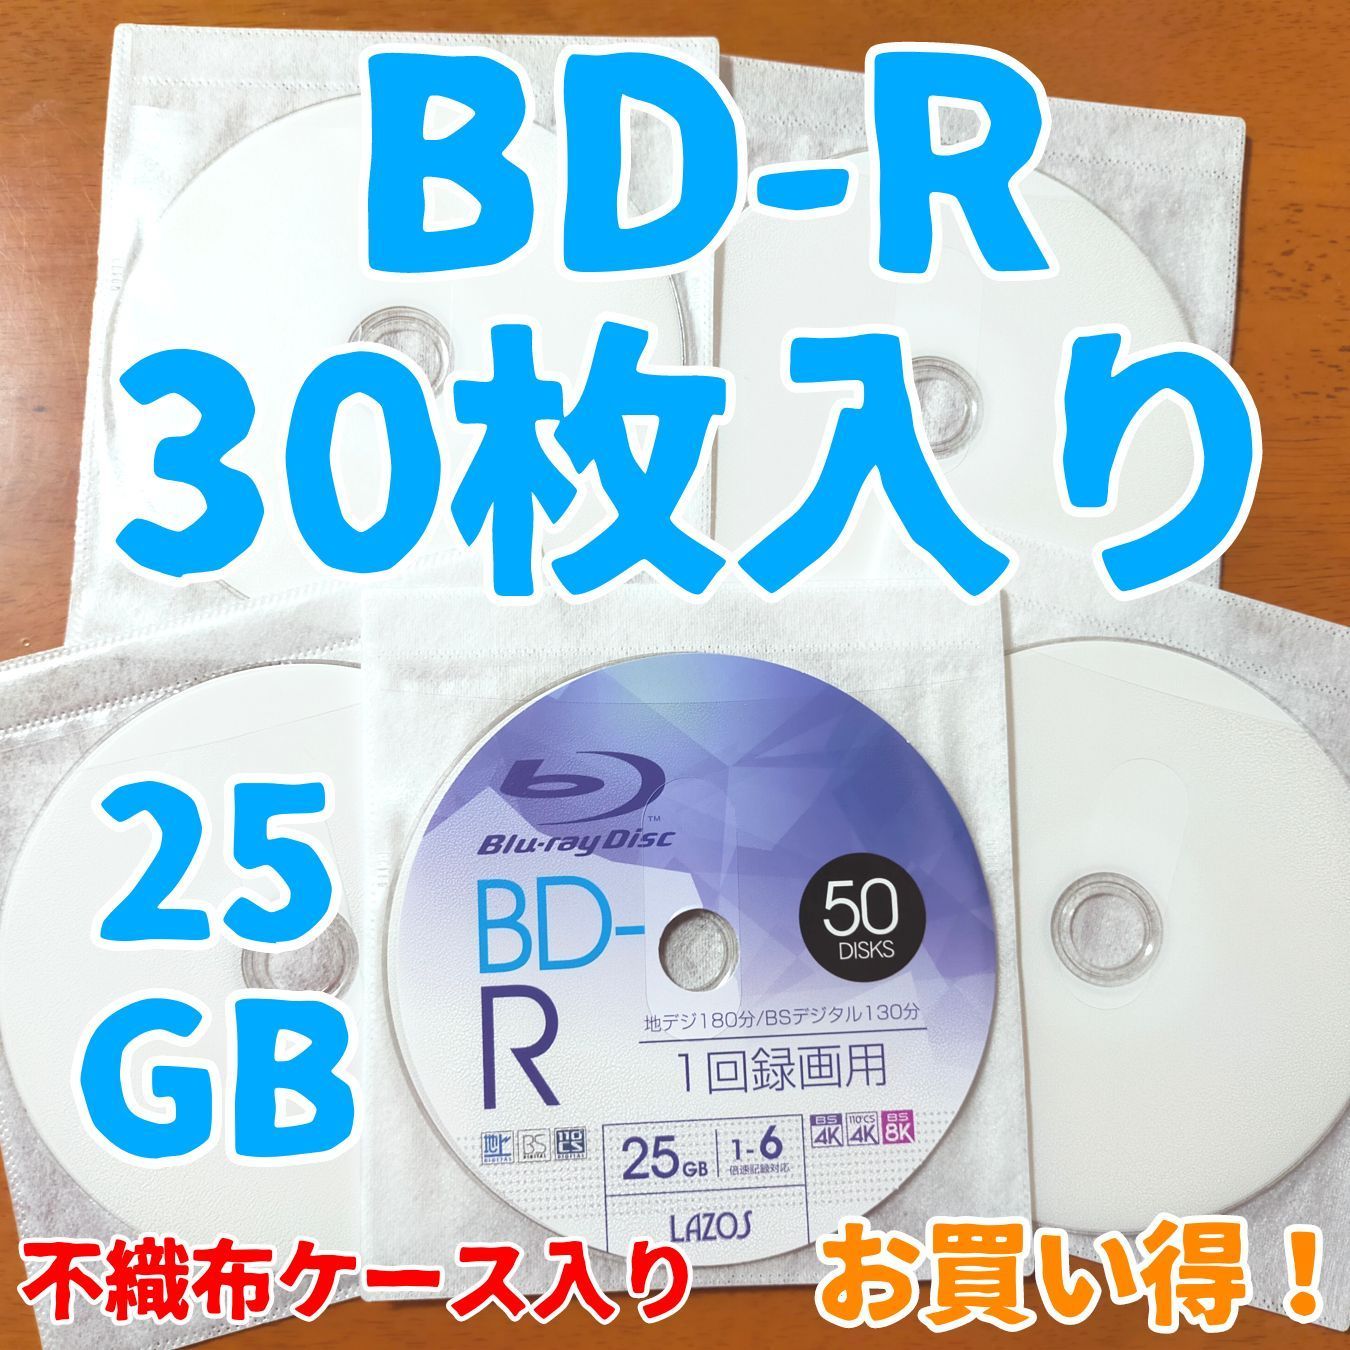 録画用ブルーレイディスク 25GB 30枚セット - メルカリ